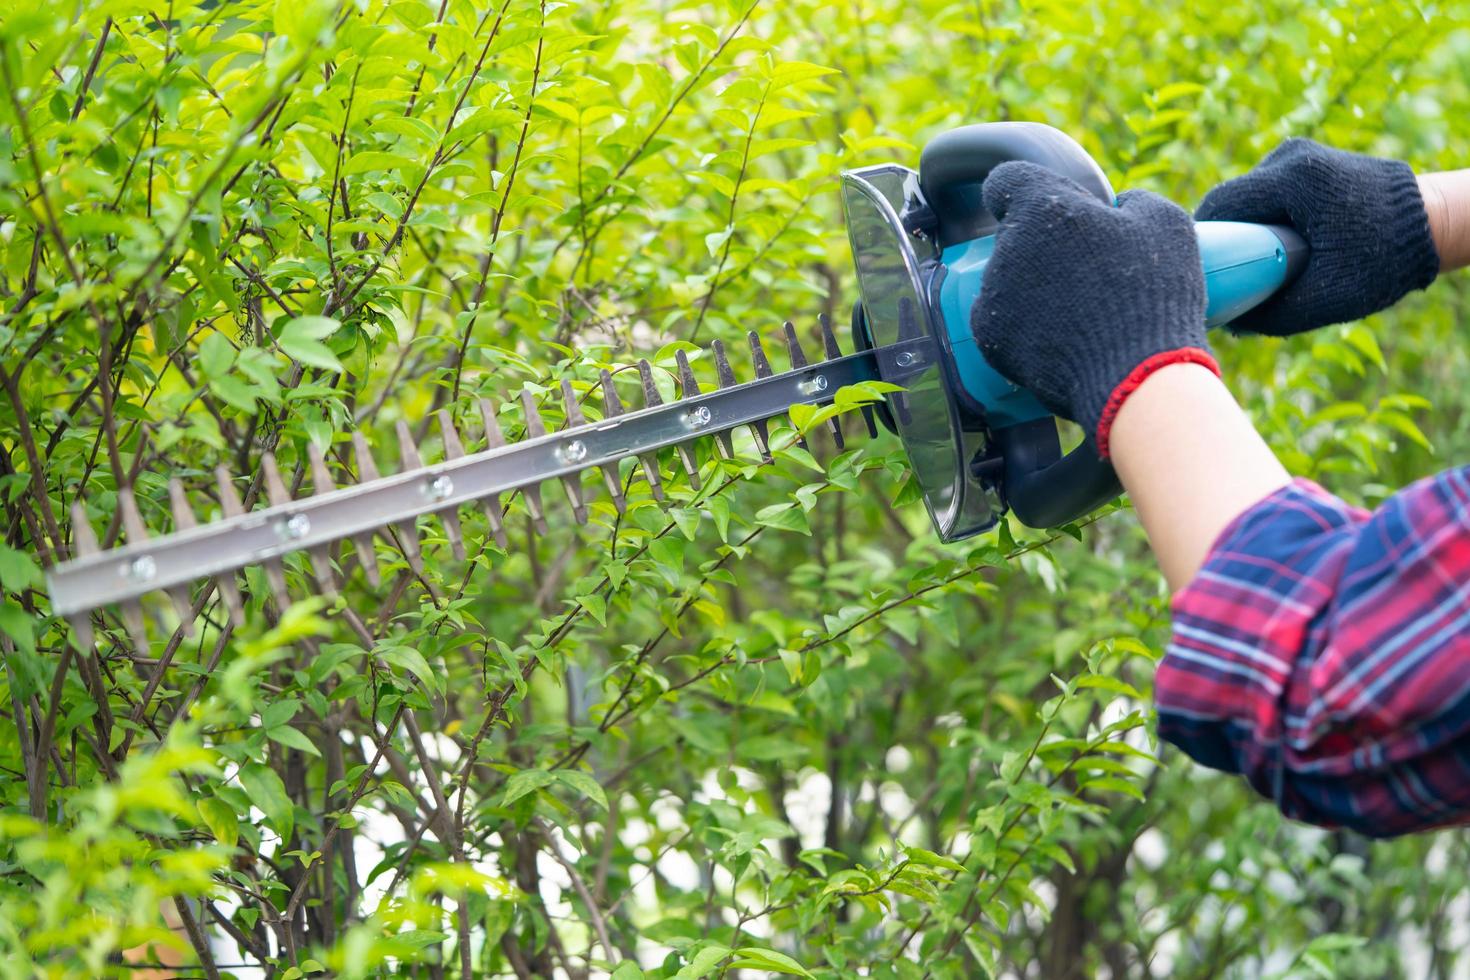 giardiniere che tiene il tagliasiepi elettrico per tagliare la cima degli alberi in giardino. foto